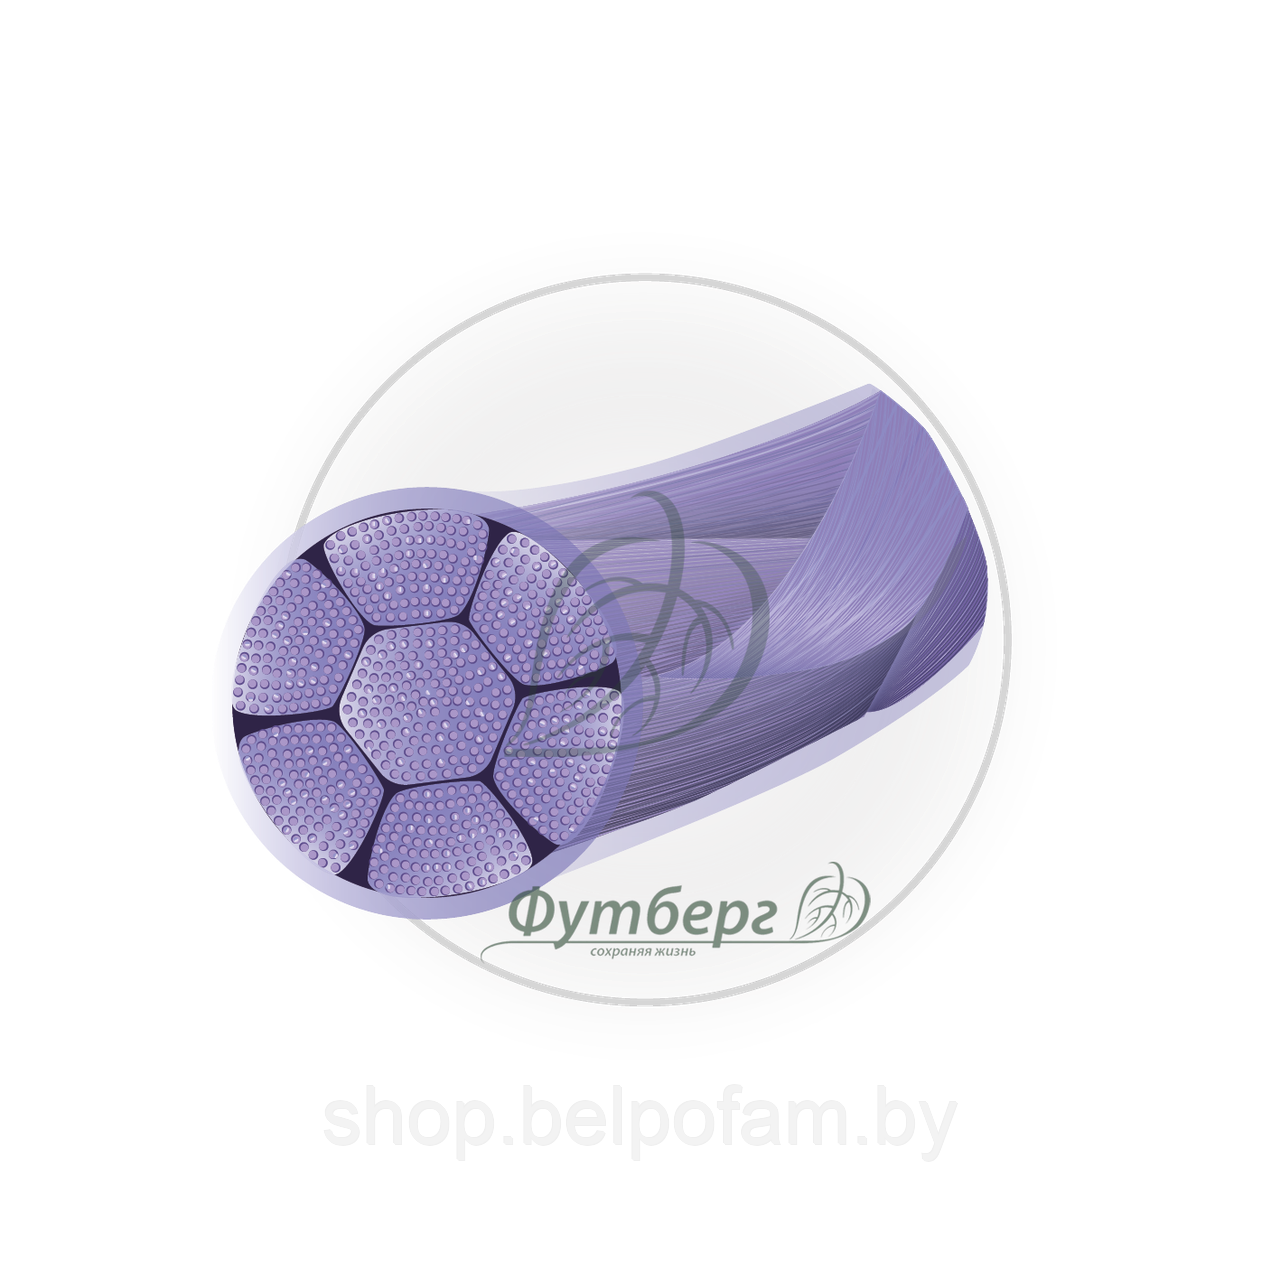 Материал шовный хирургический Полигликолид, фиолетовый,Metric 2 USP 3-0, 75 см, 1 игла колющая,22 мм,изгиб 1/2